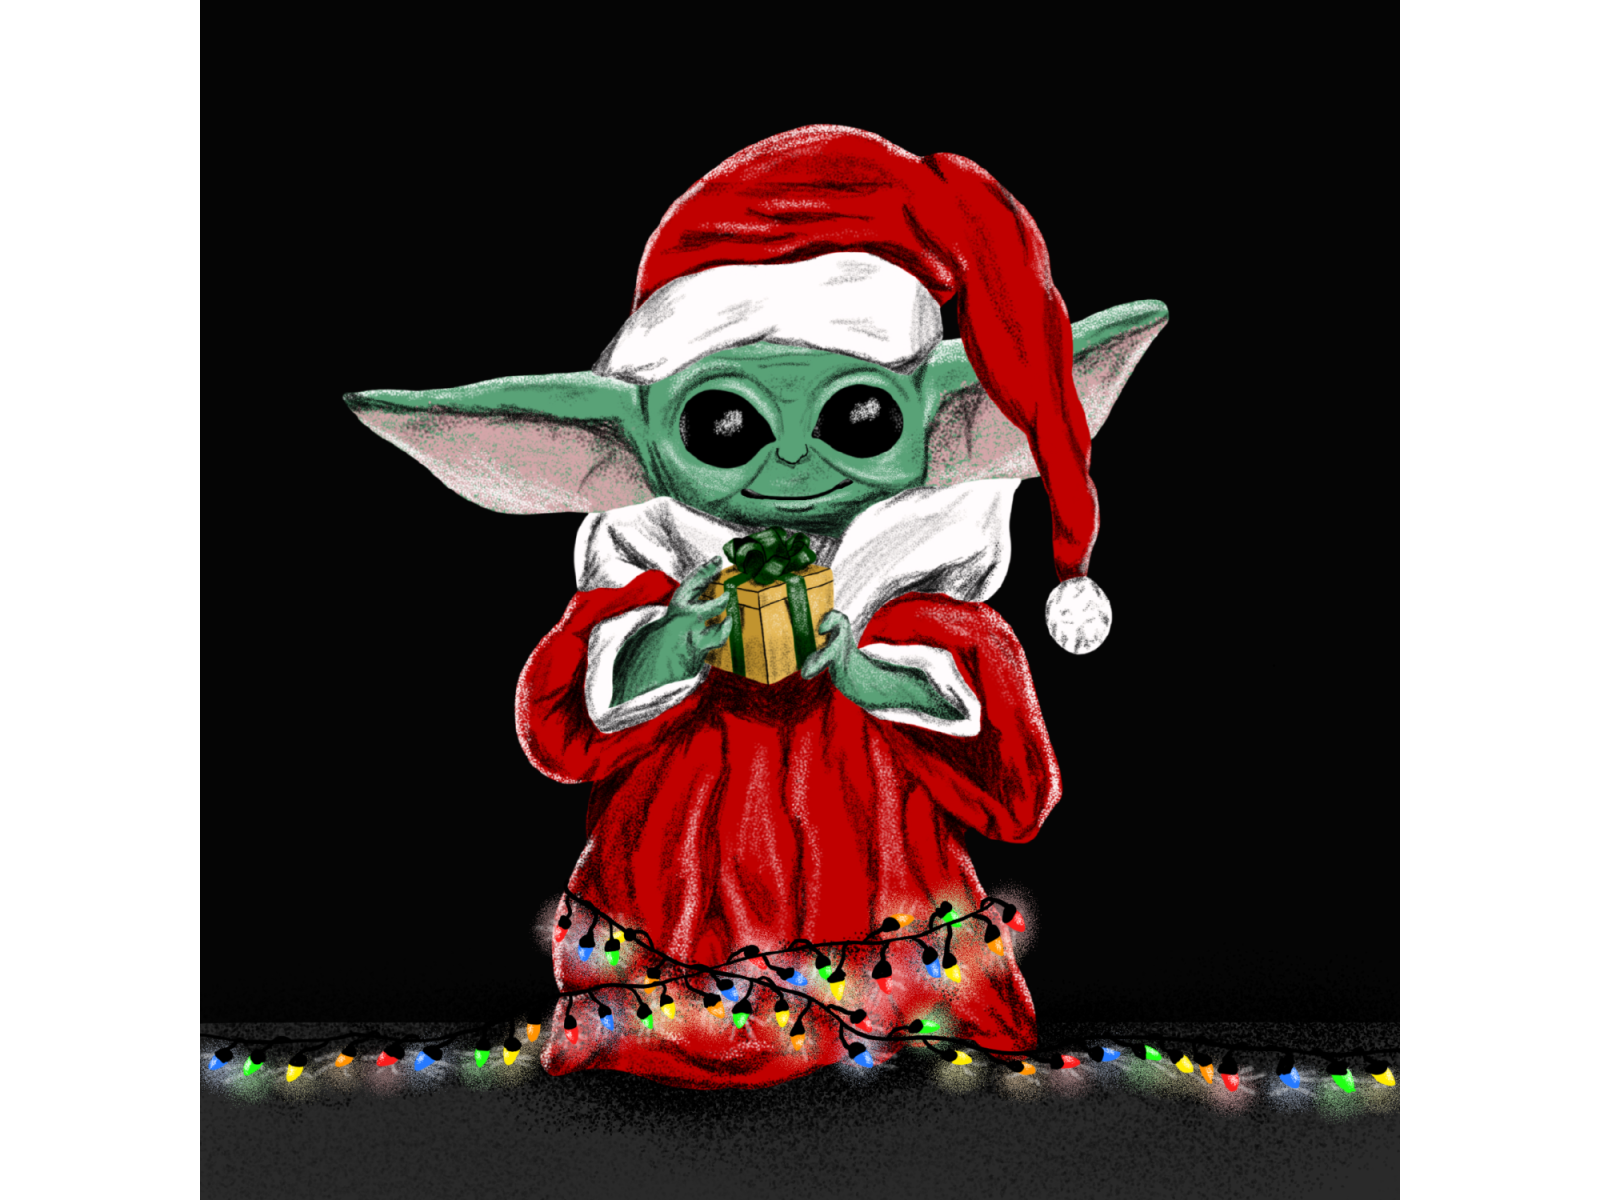 A Baby Yoda Christmas by Adam Hawkins on Dribbble